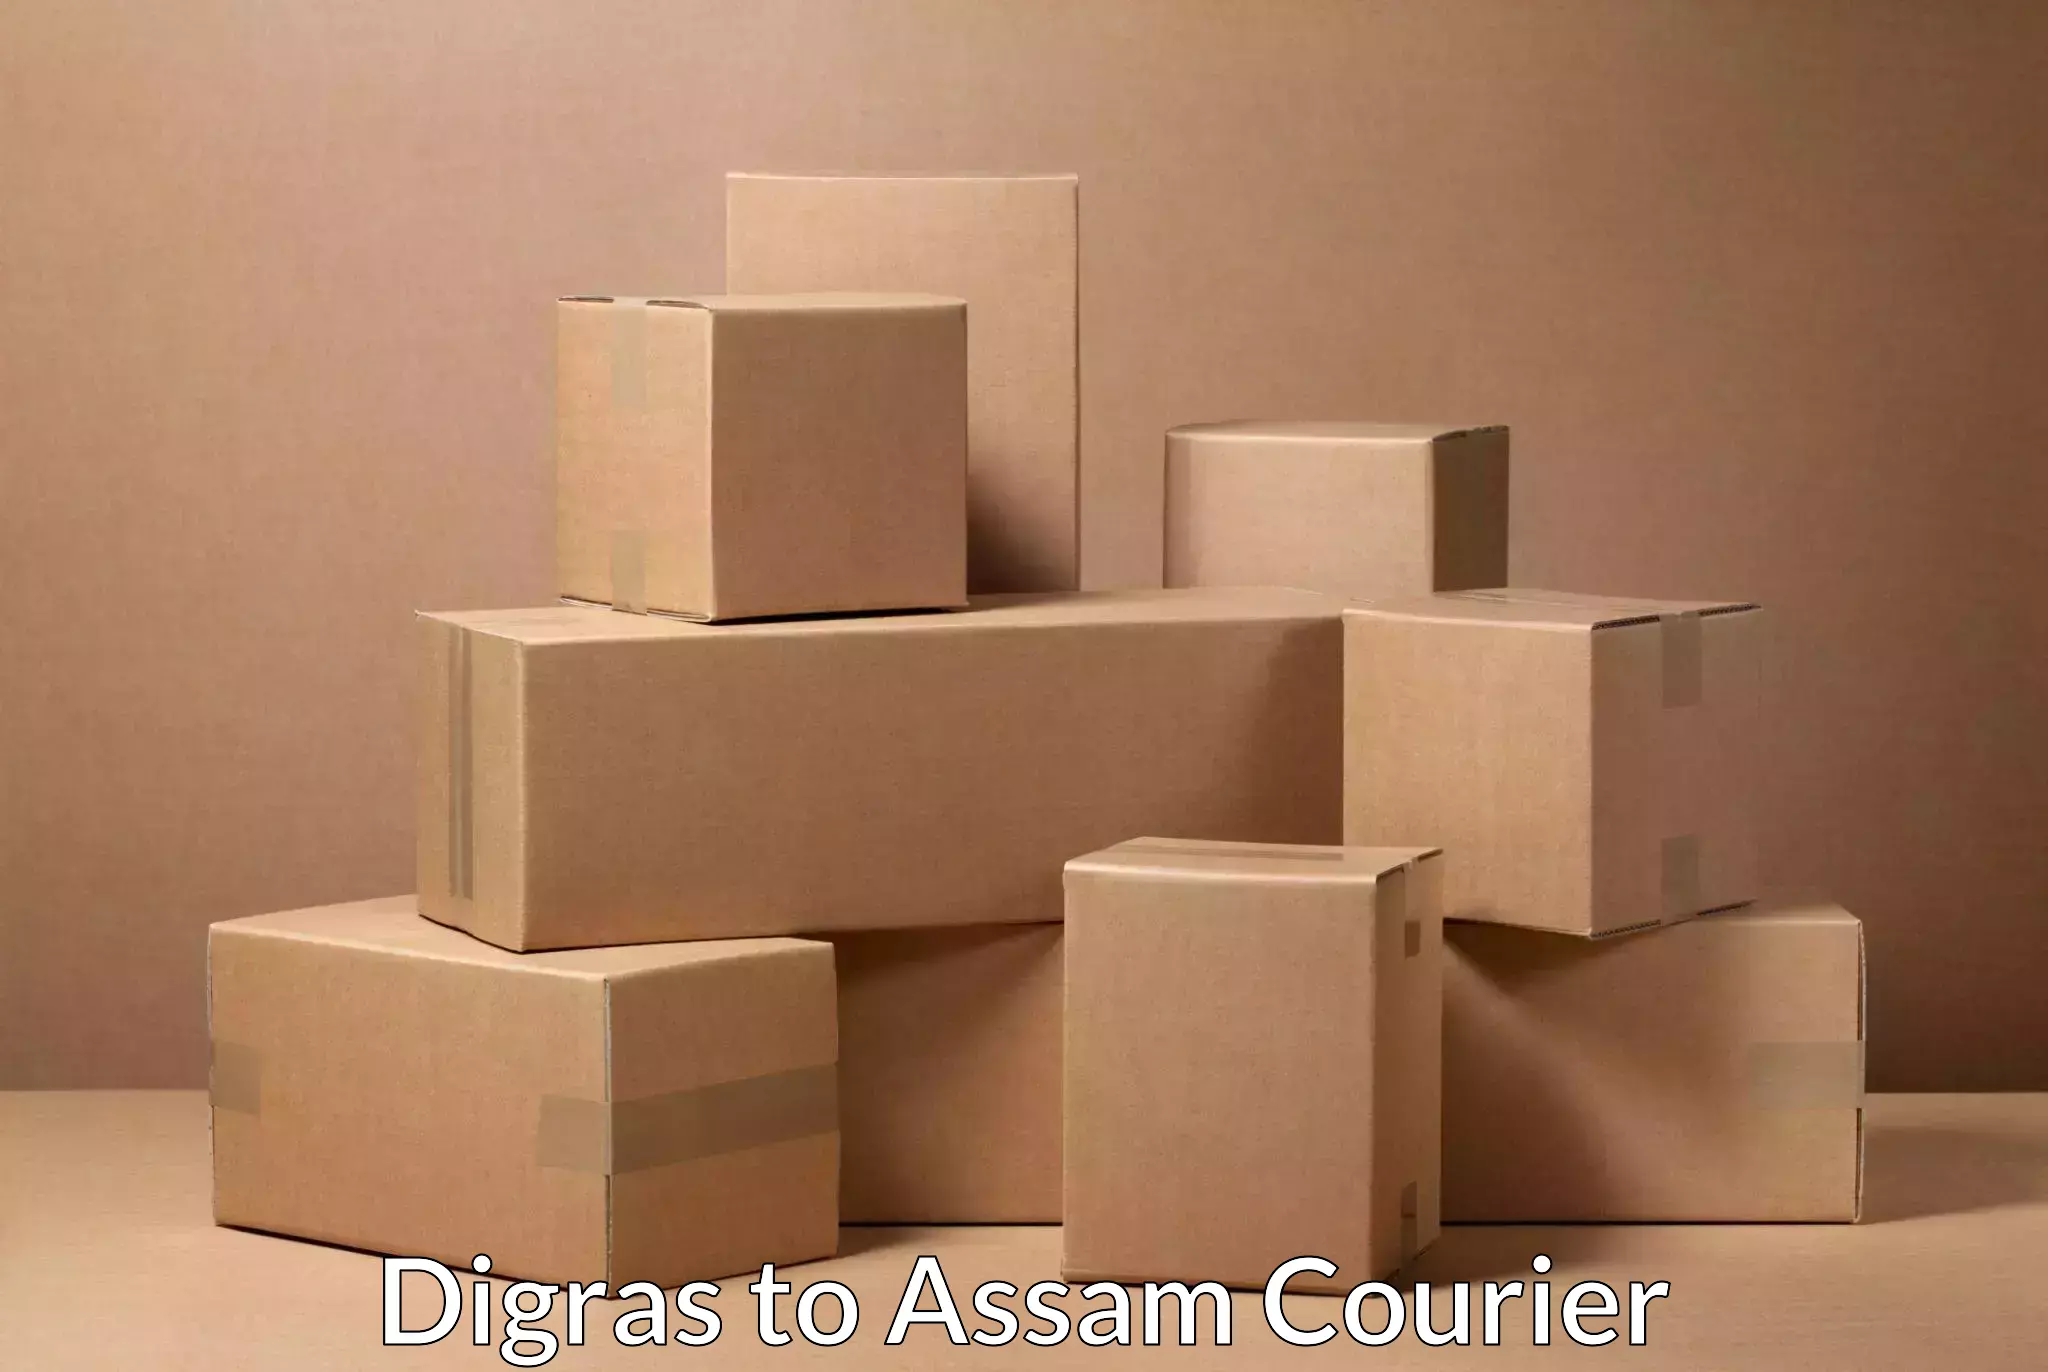 Express logistics service Digras to Assam